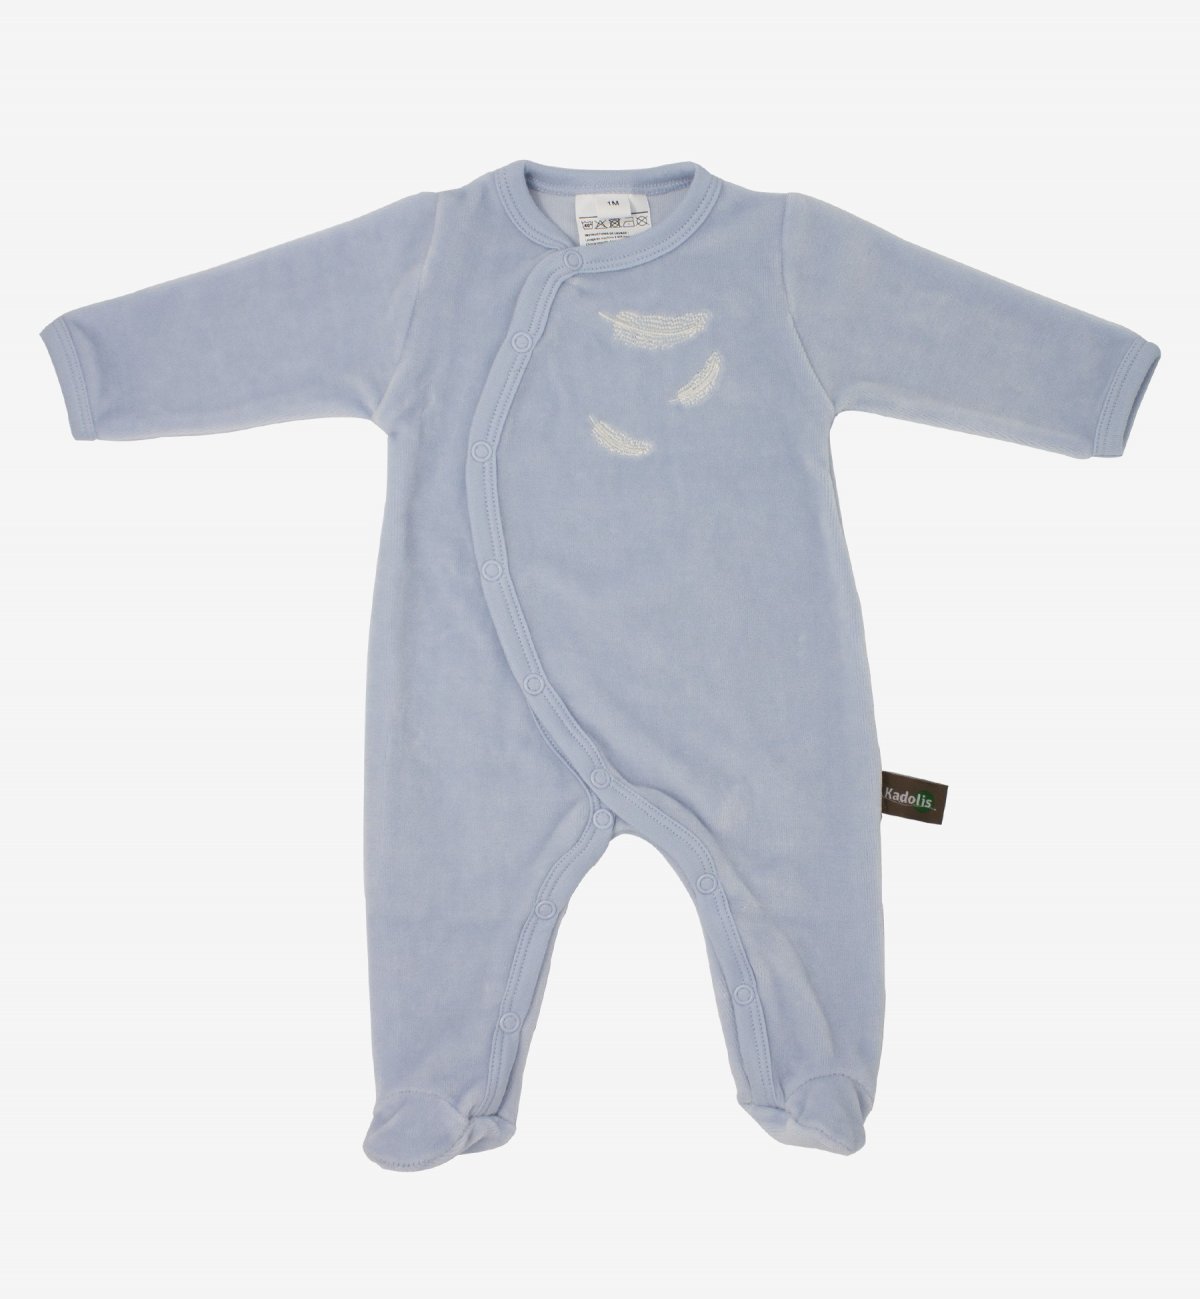 Pijama bebê em Algodão Orgânico com padrões de penas brancas Kadolis